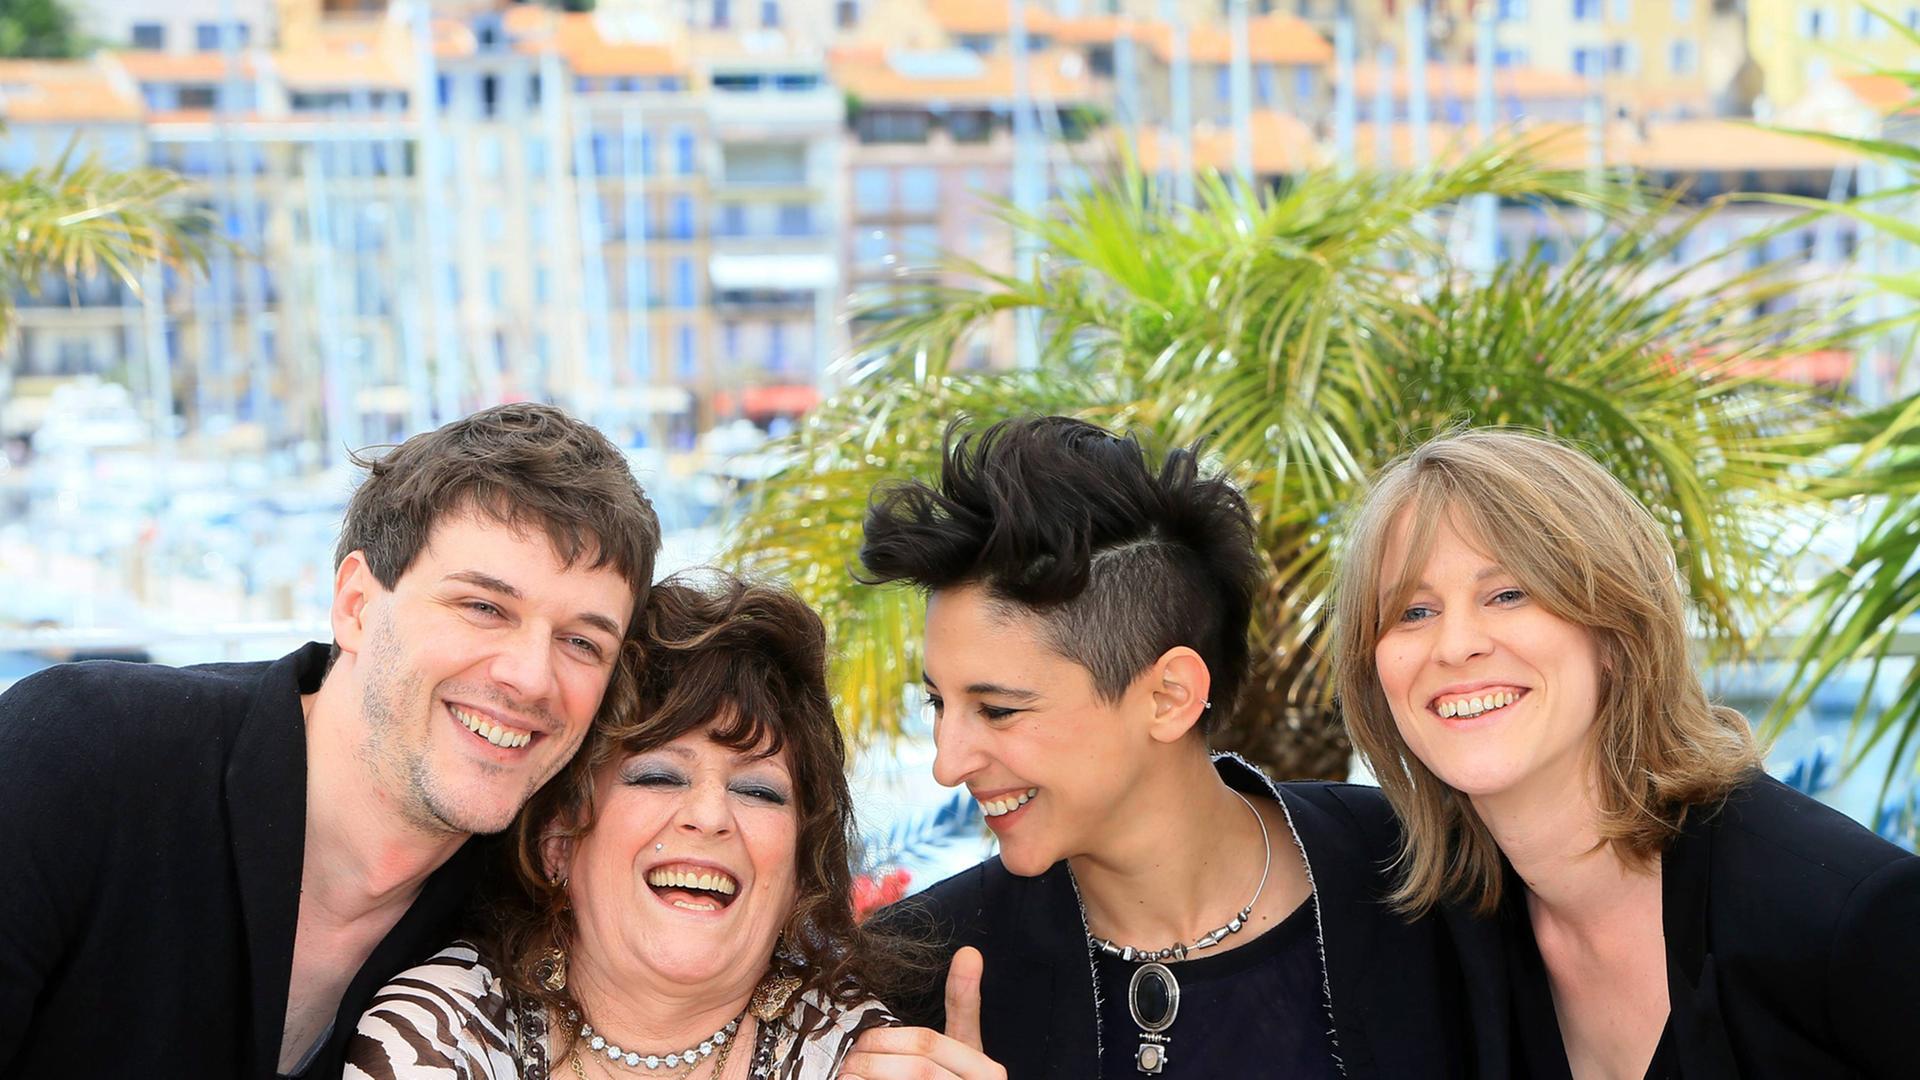 Das Regietrio Samuel Theis, Claire Burger und Marie Amachoukeli zusammen mit der Hauptdarstellerin des Films "Party Girl", Angélique Litzenburger, bei einem Fototermin des Filmfestivals in Cannes am 12.5.2014